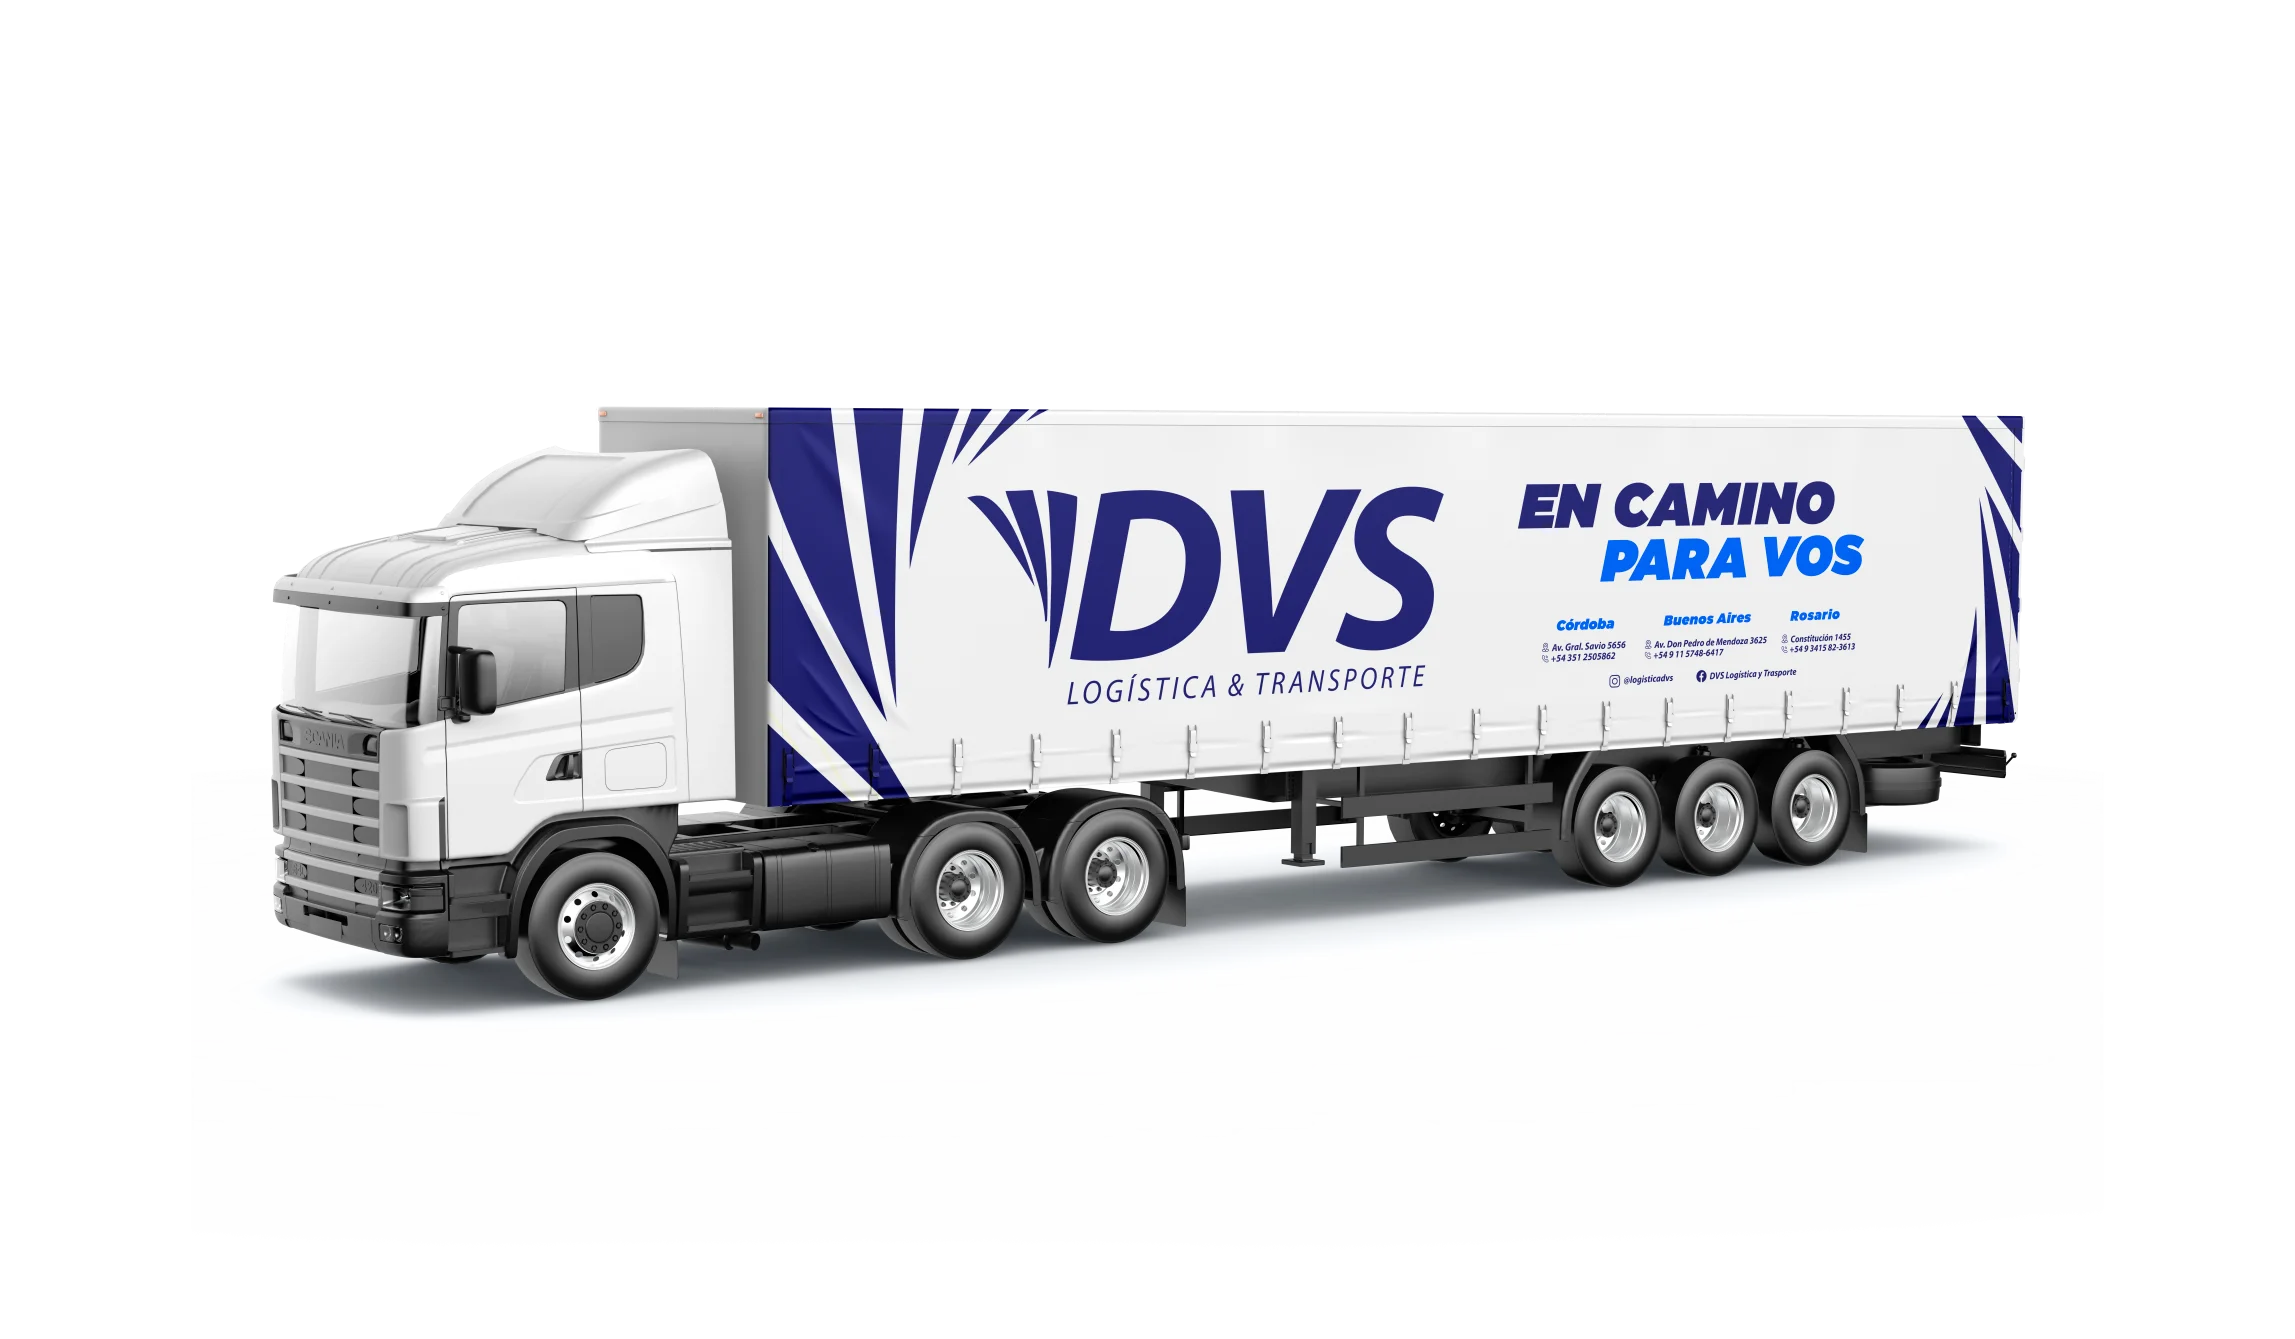 Camión DVS Logística y Transporte